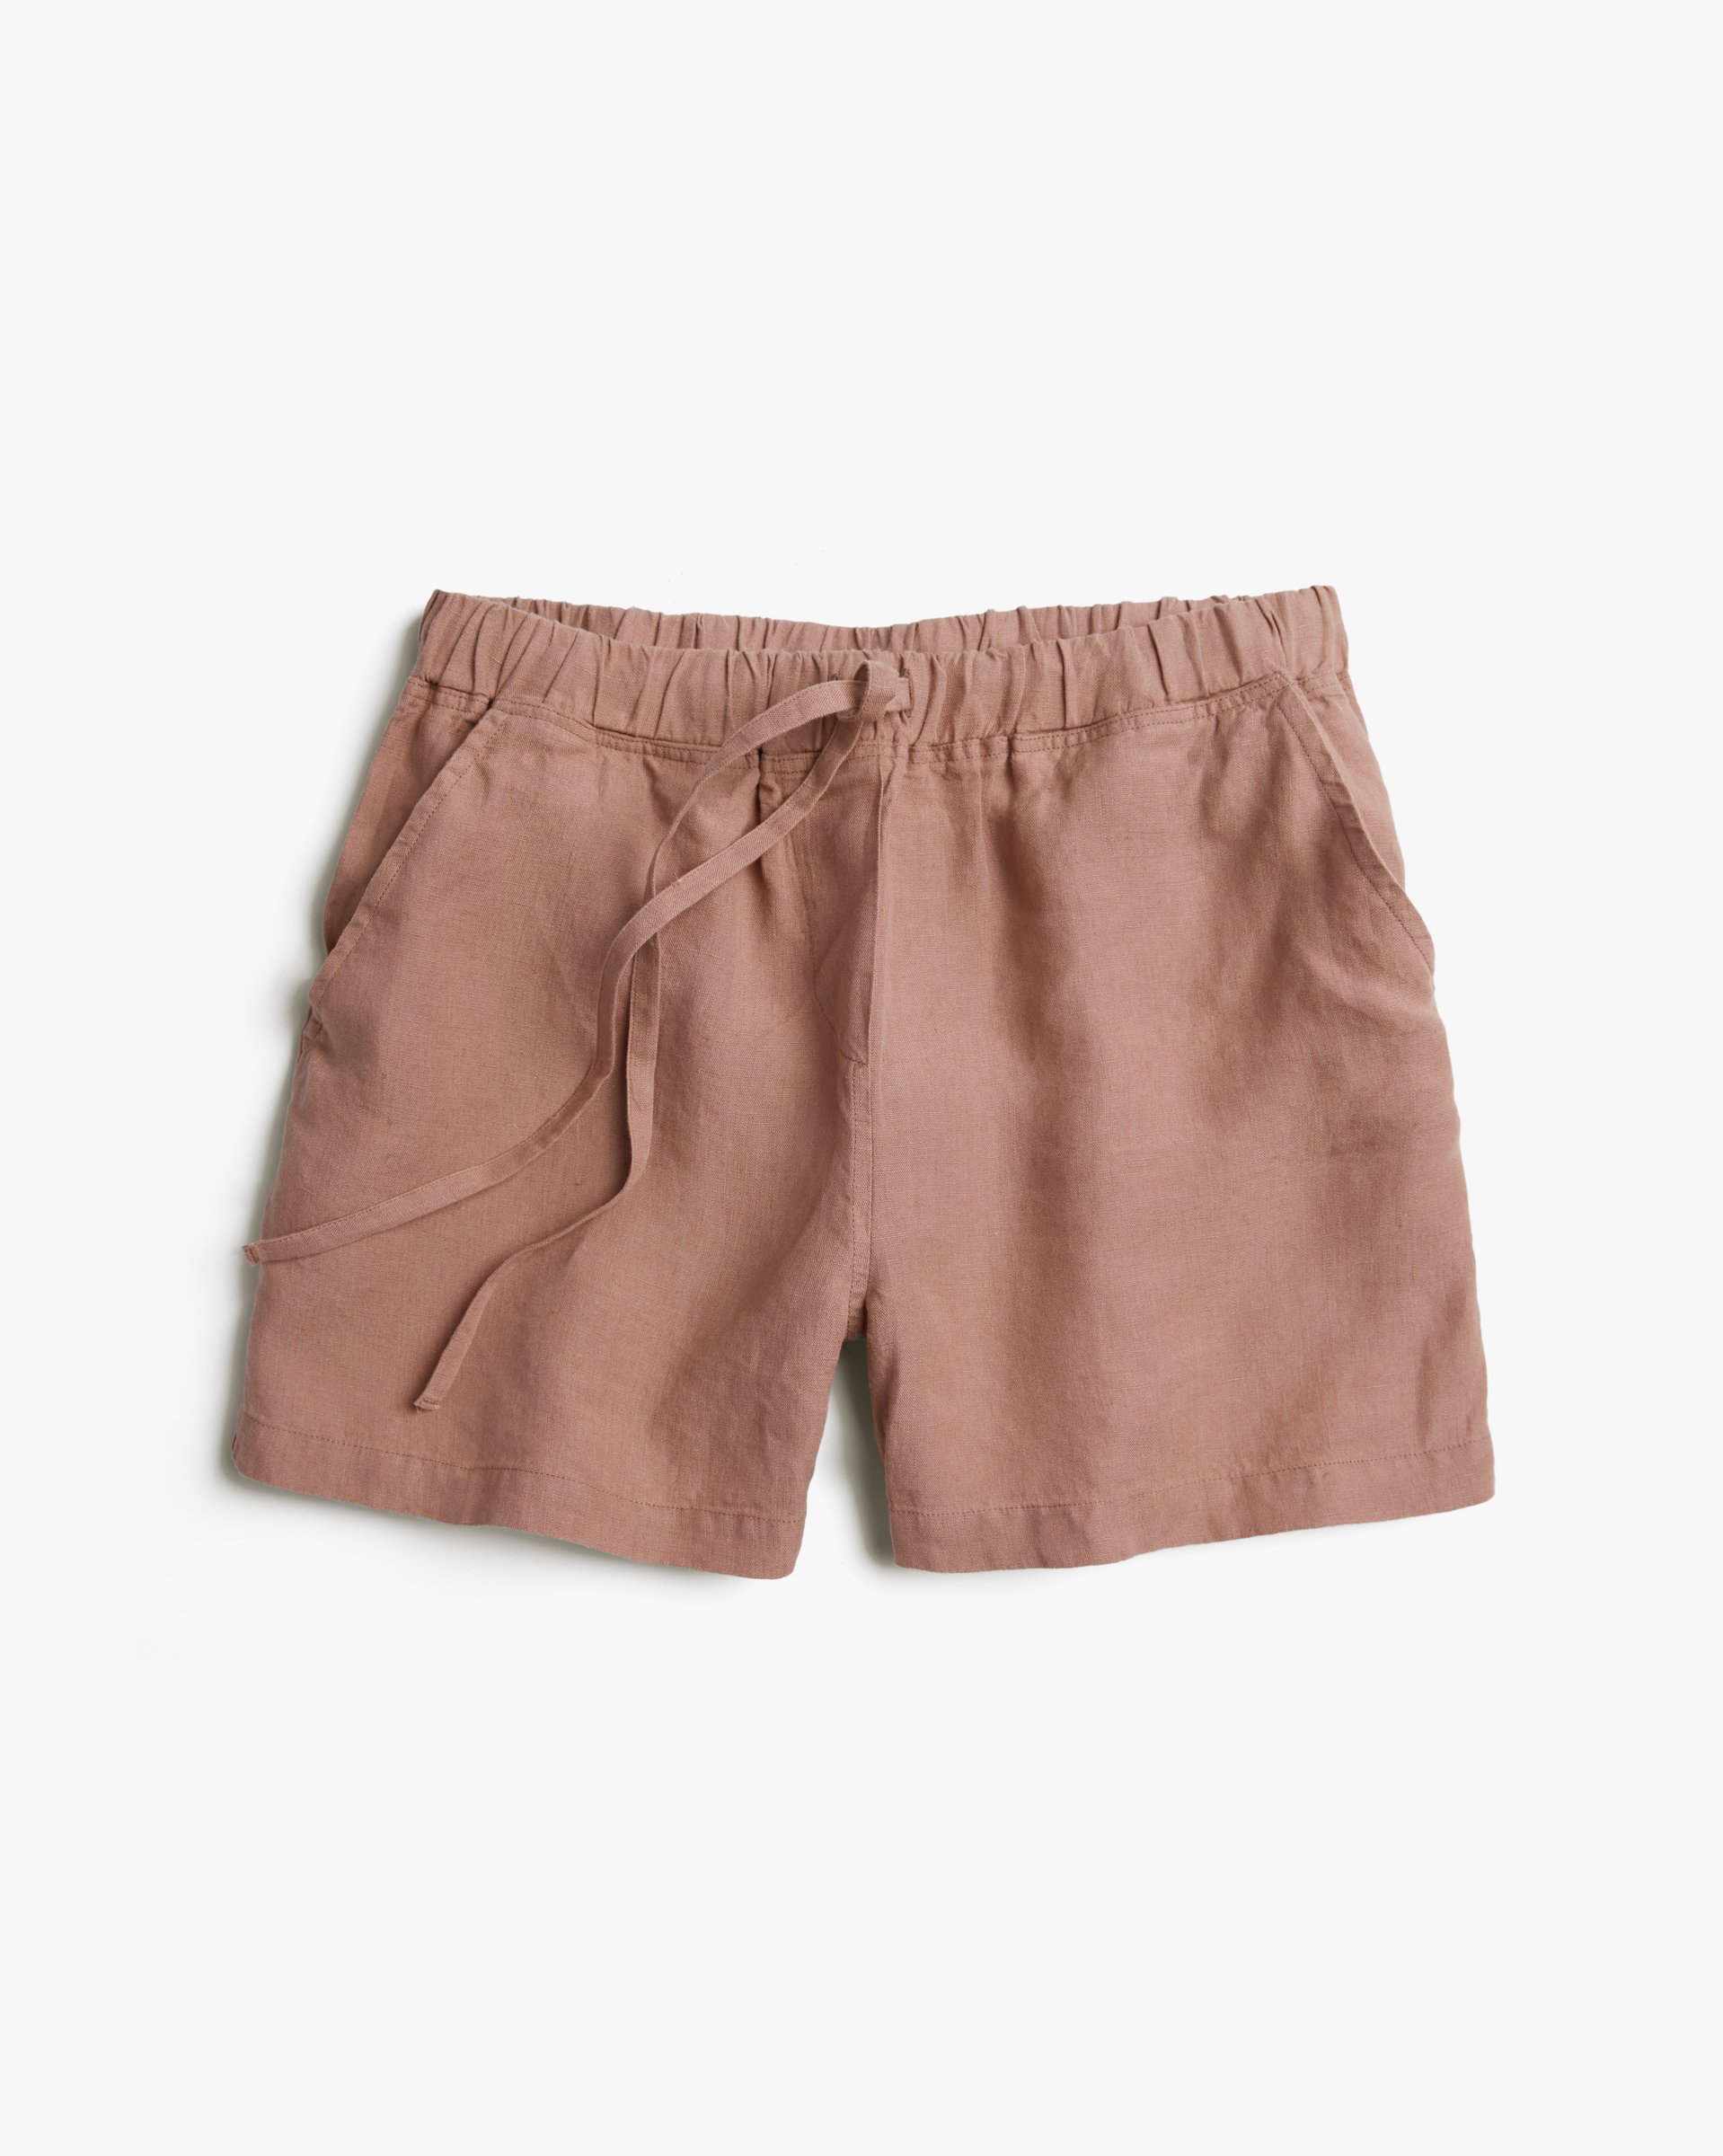 Brown short shorts